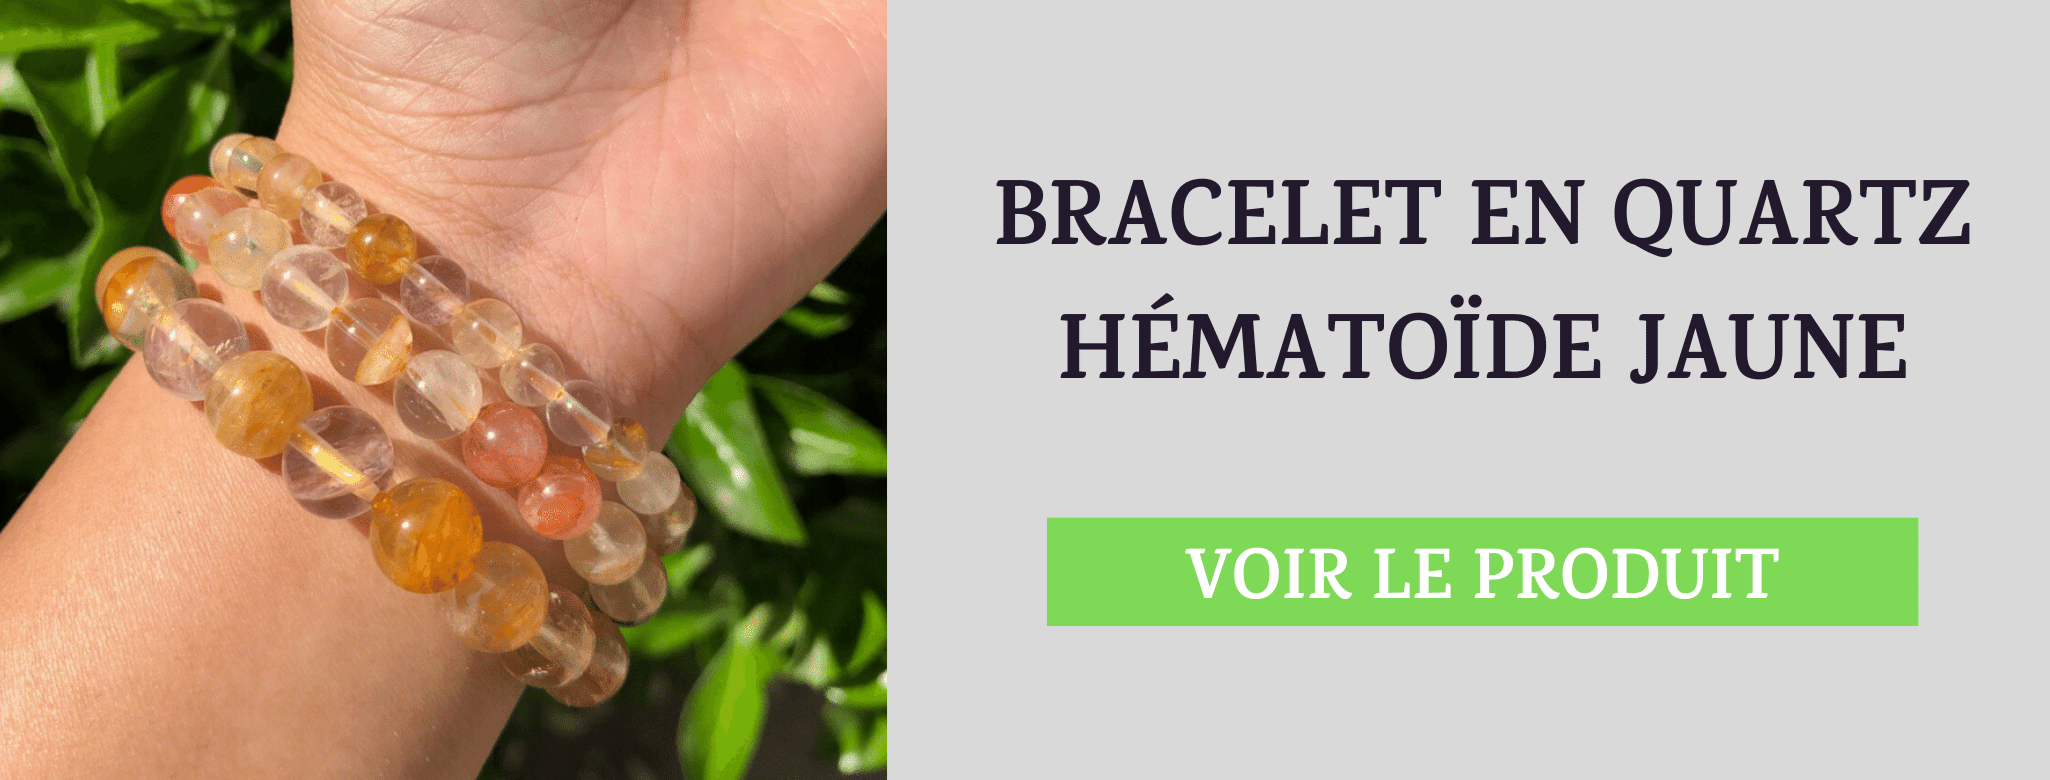 Bracelet Quartz Hématoïde Jaune